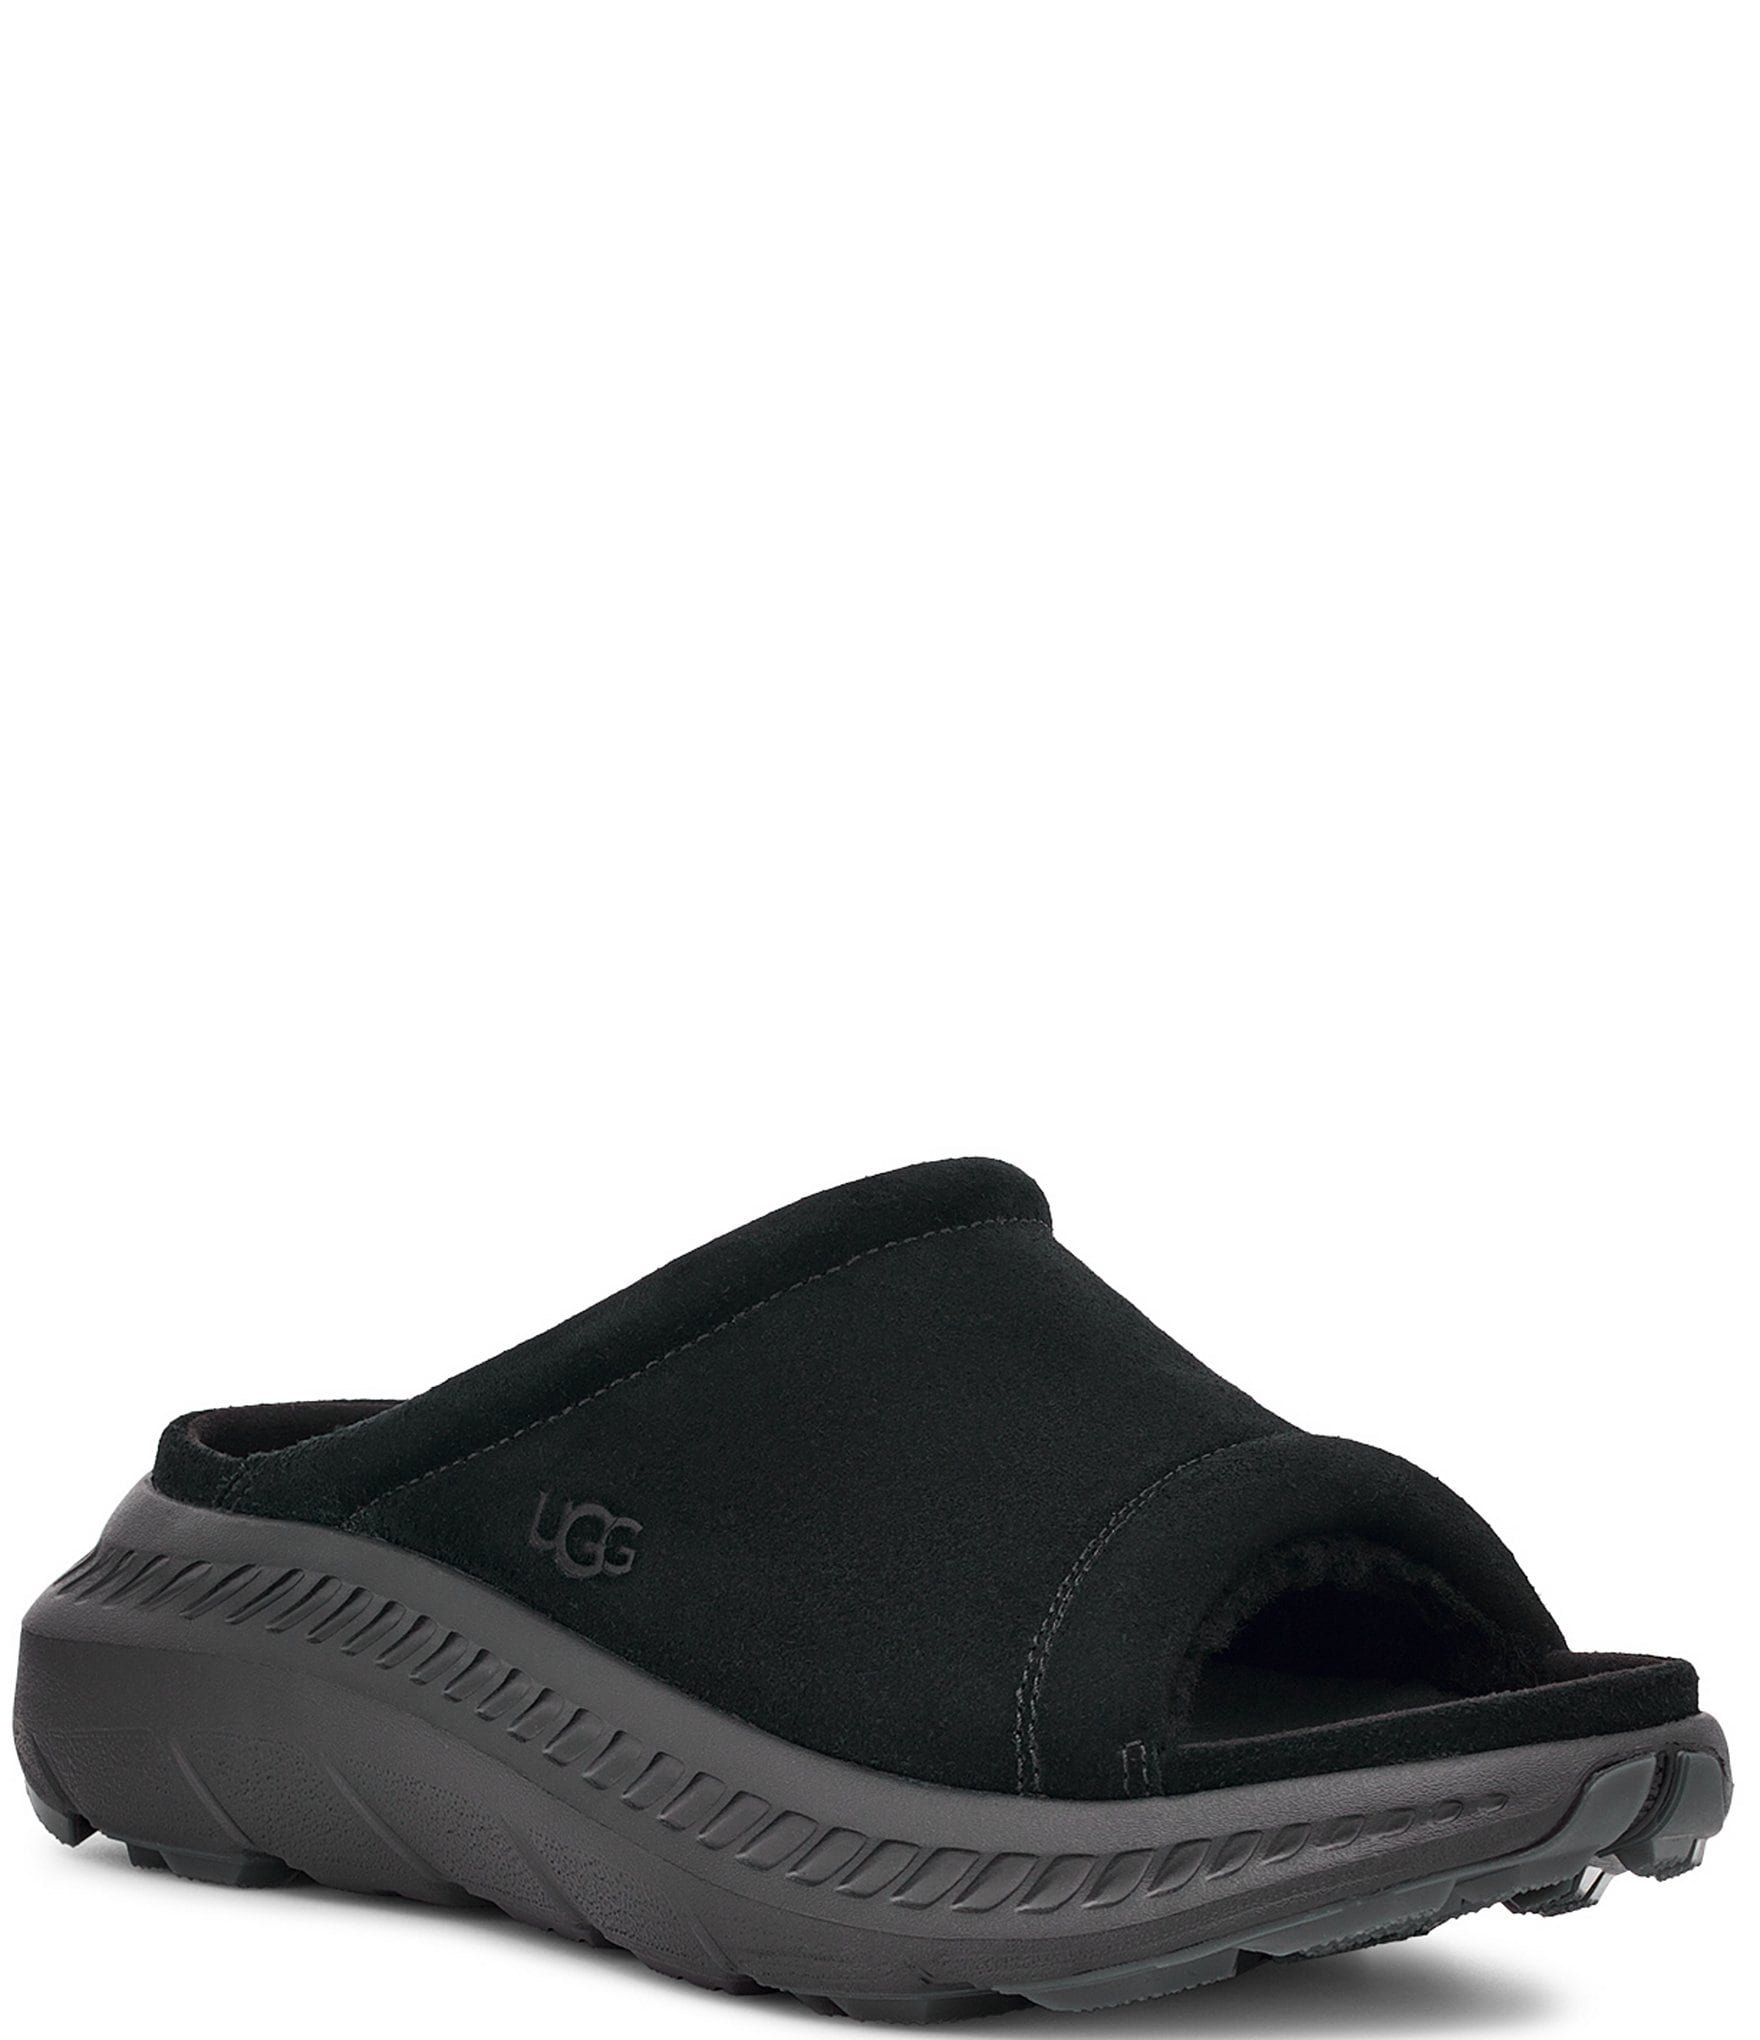 UGG Men's CA805 V2 Suede Slide Sandals Dillard's